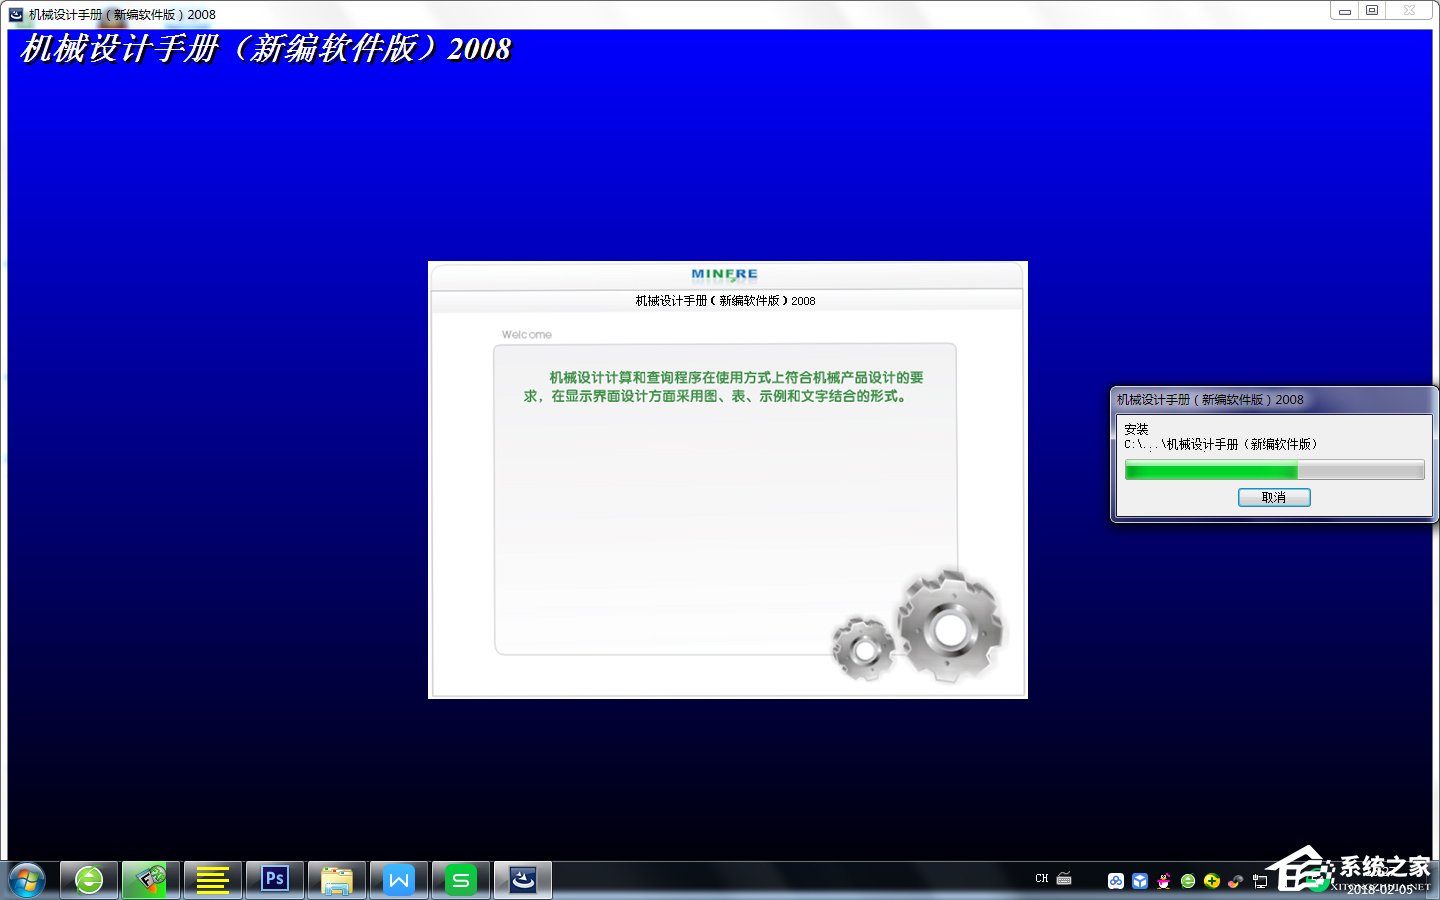 机械设计手册2008新编软件版破解版附安装破解教程